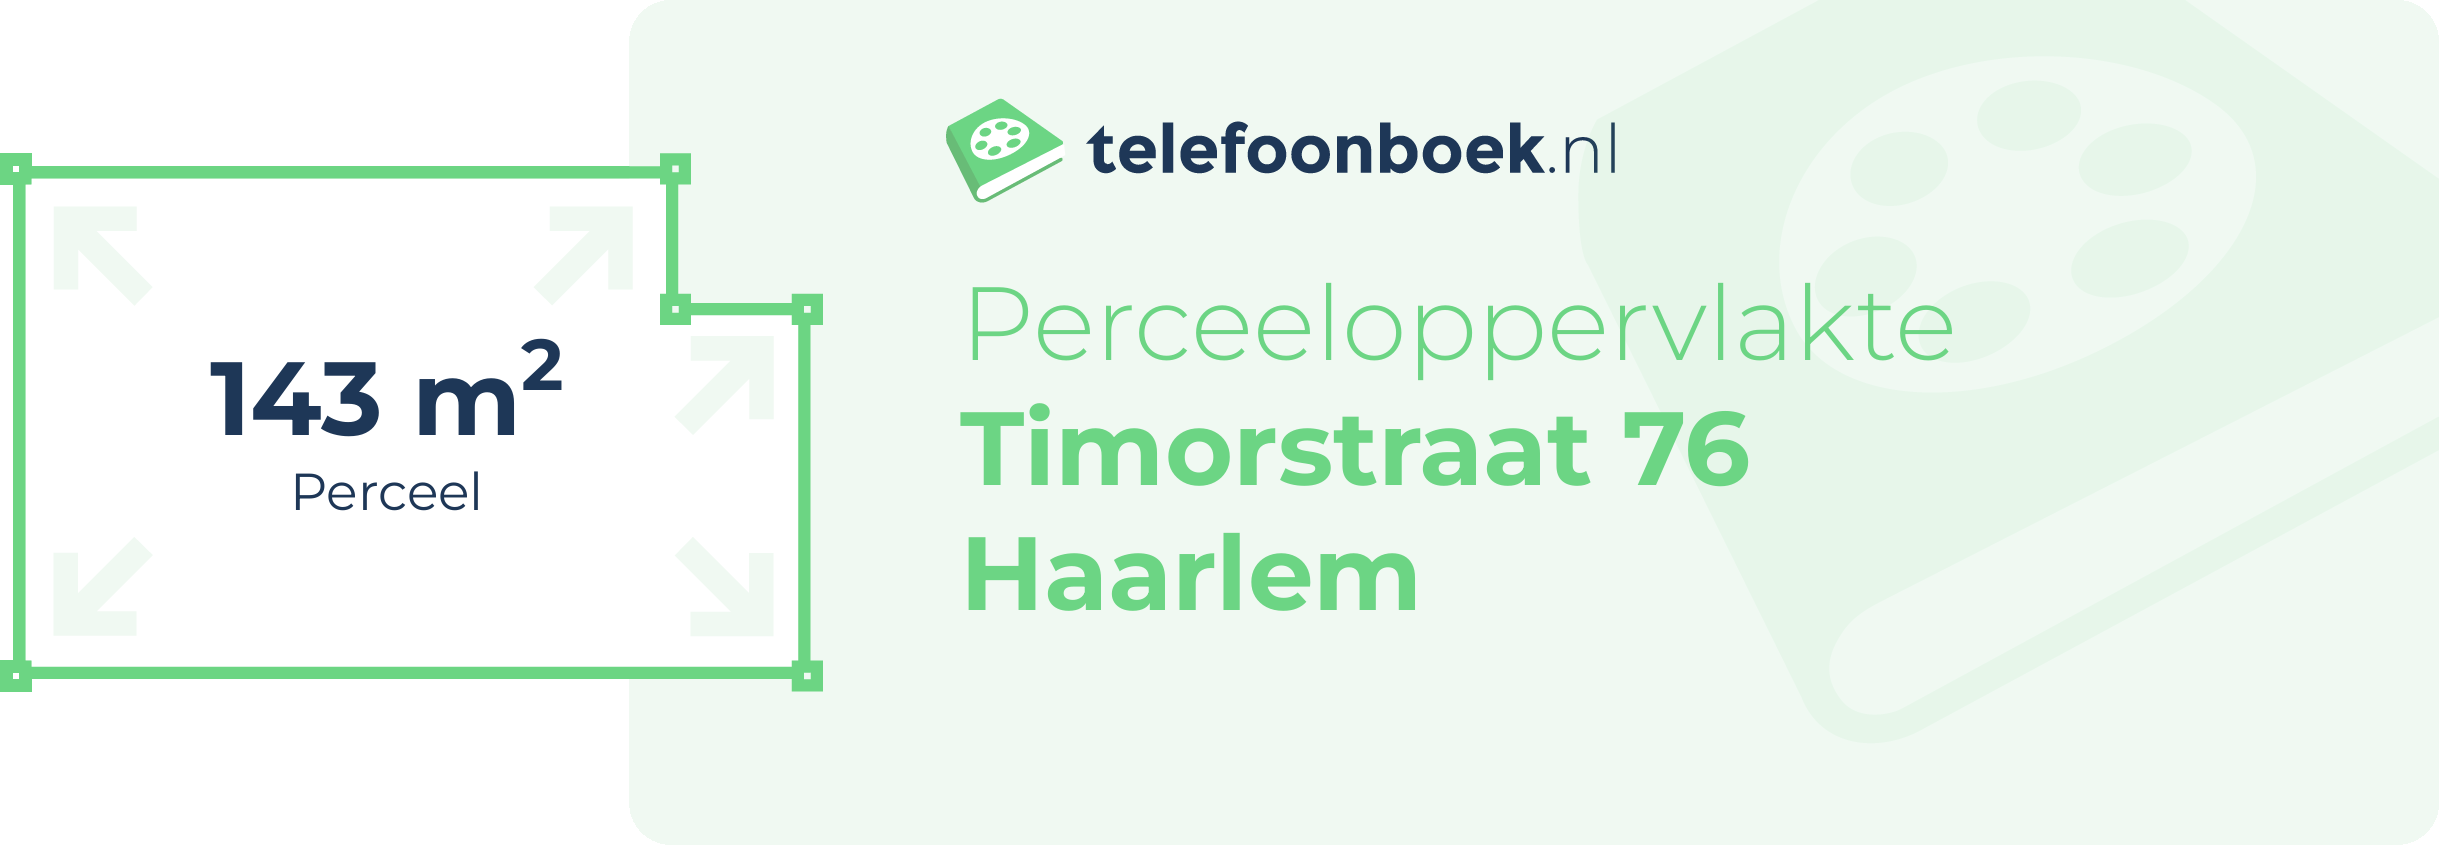 Perceeloppervlakte Timorstraat 76 Haarlem